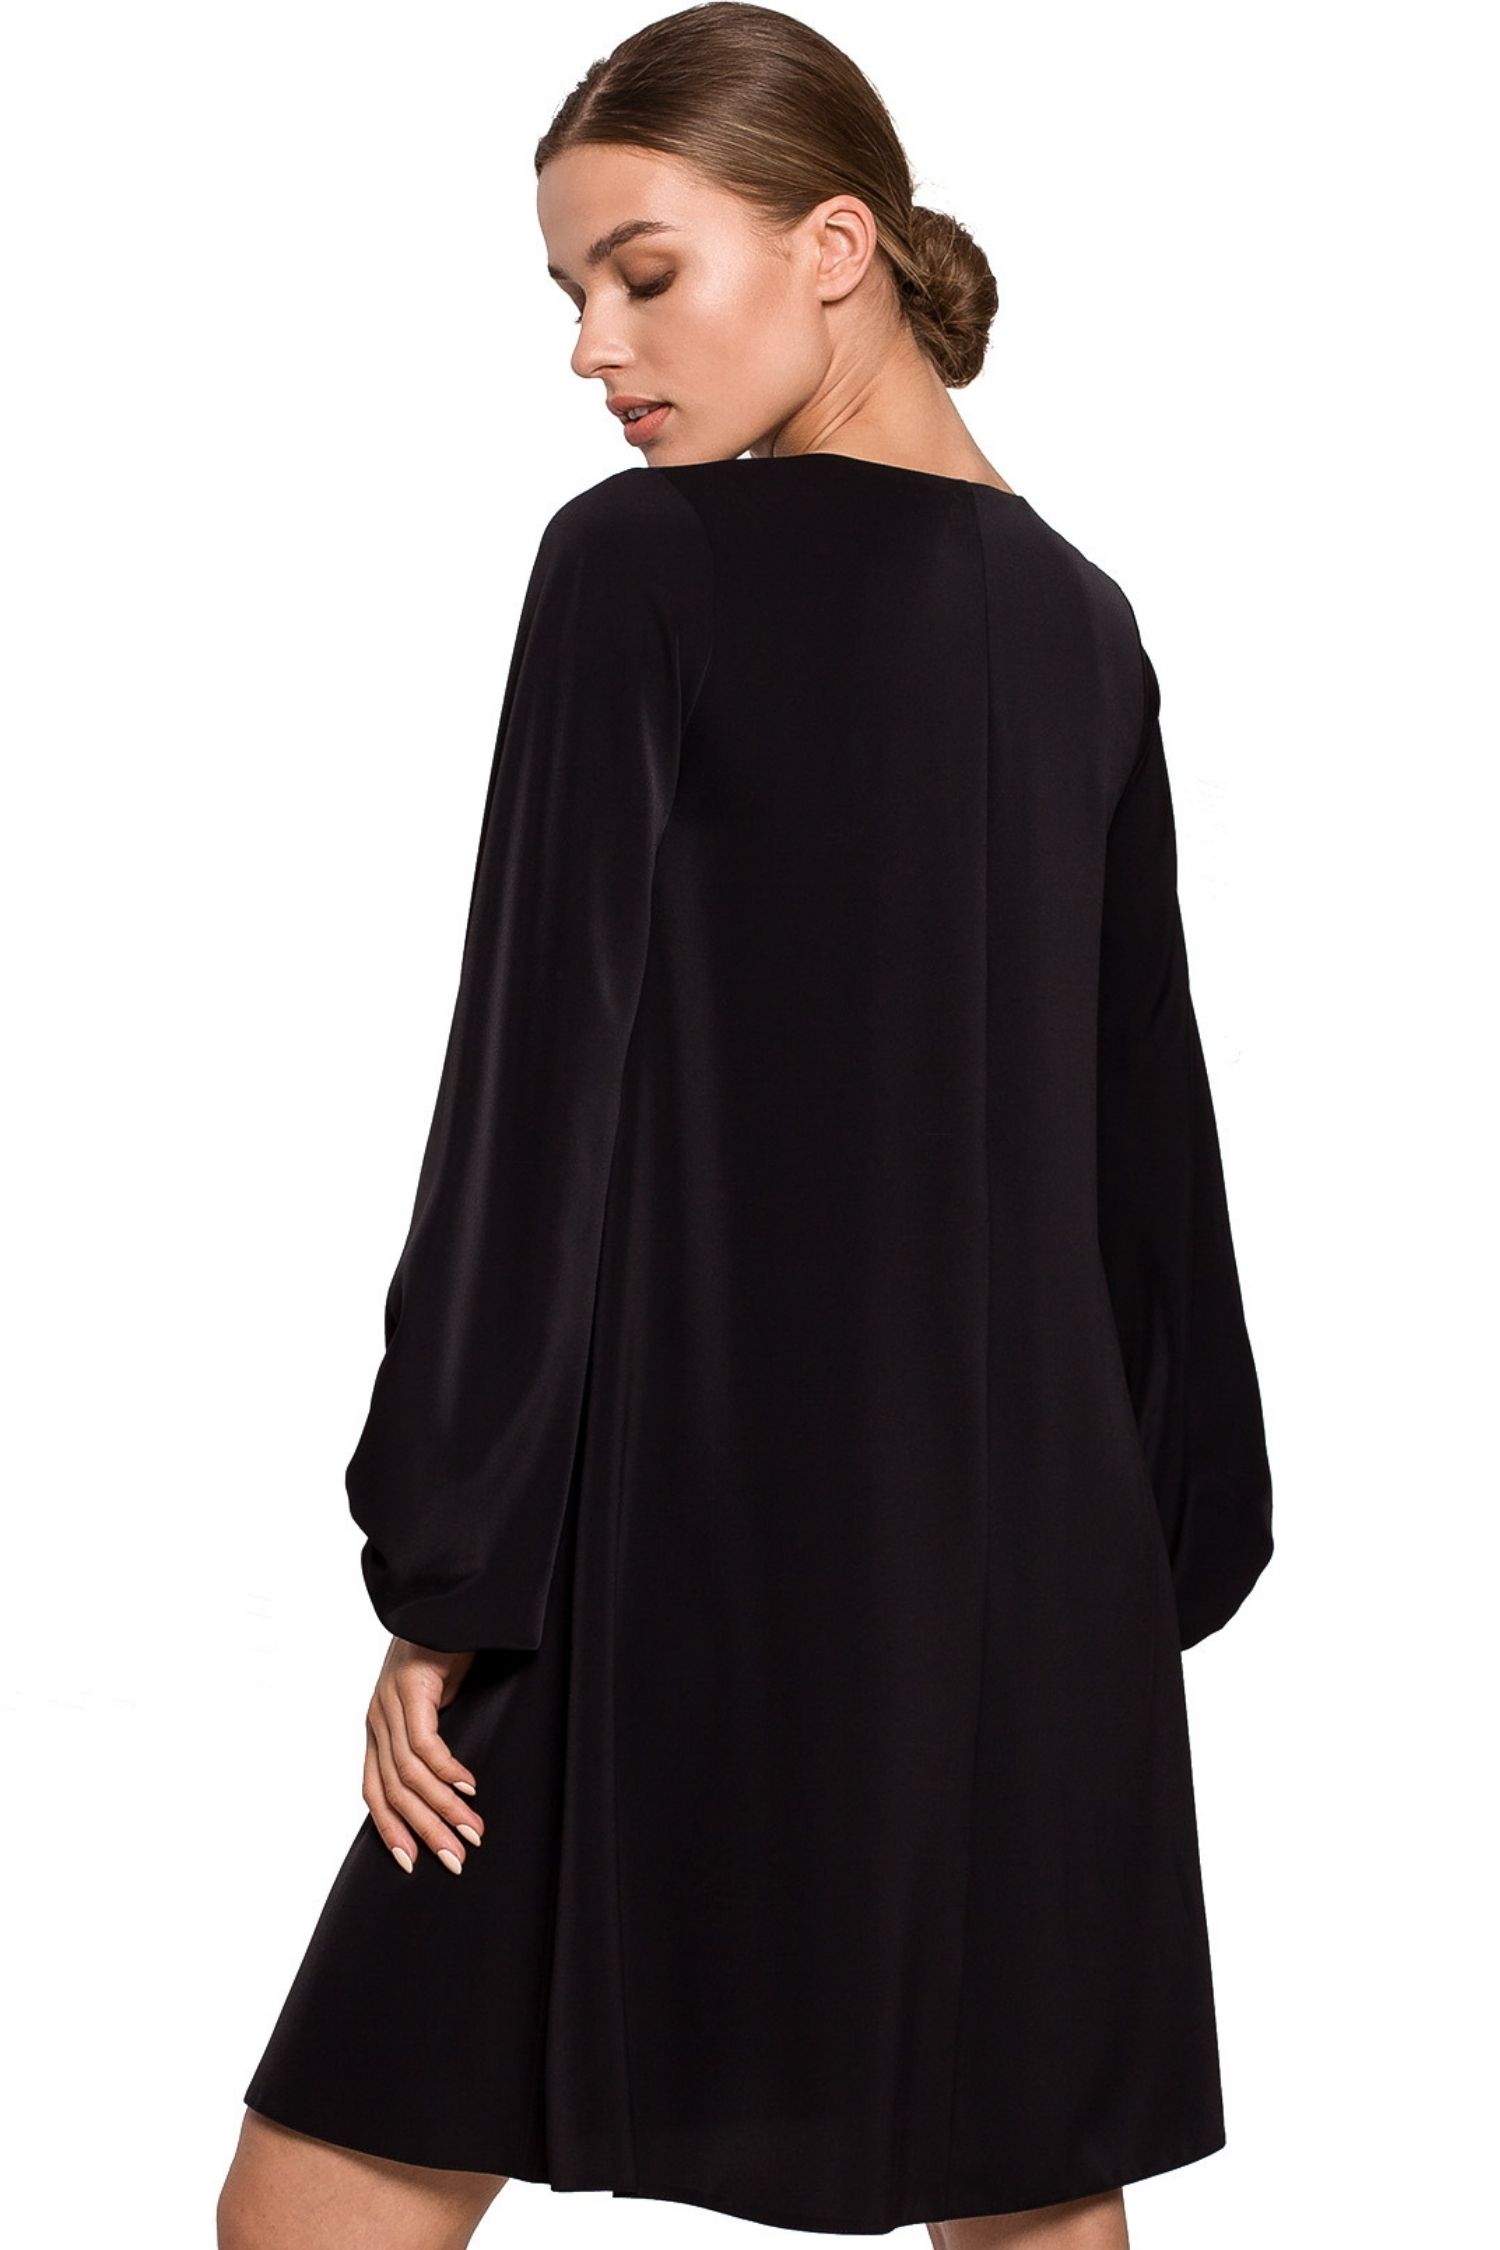 Opis: Elegancka sukienka trapezowa z bufiastymi rękawami dekolt V czarna.